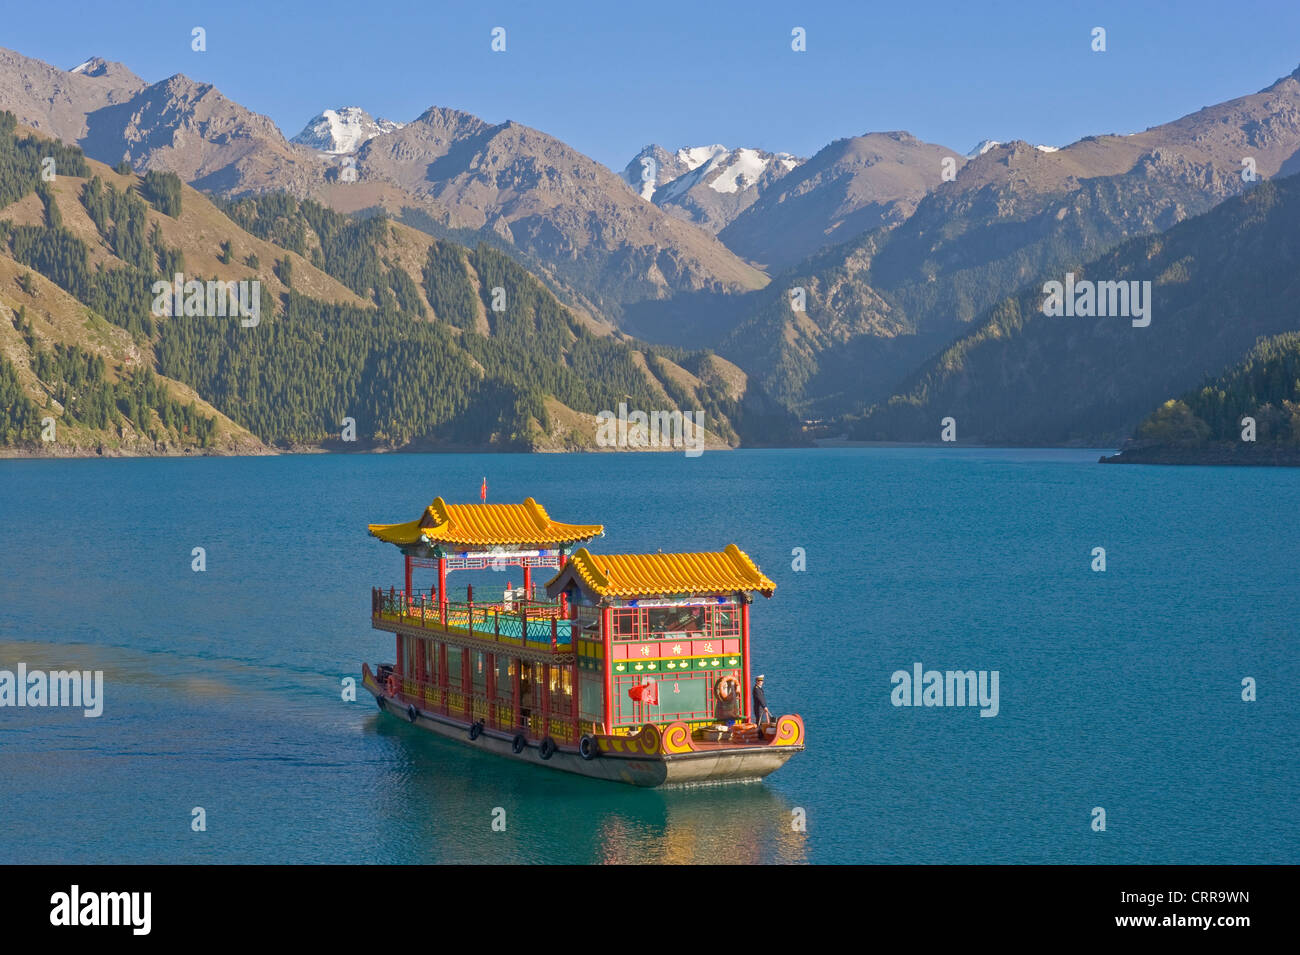 Uno stile tradizionale imbarcazione turistica presso il ristorante cinese alpine beauty spot del lago celeste. Foto Stock